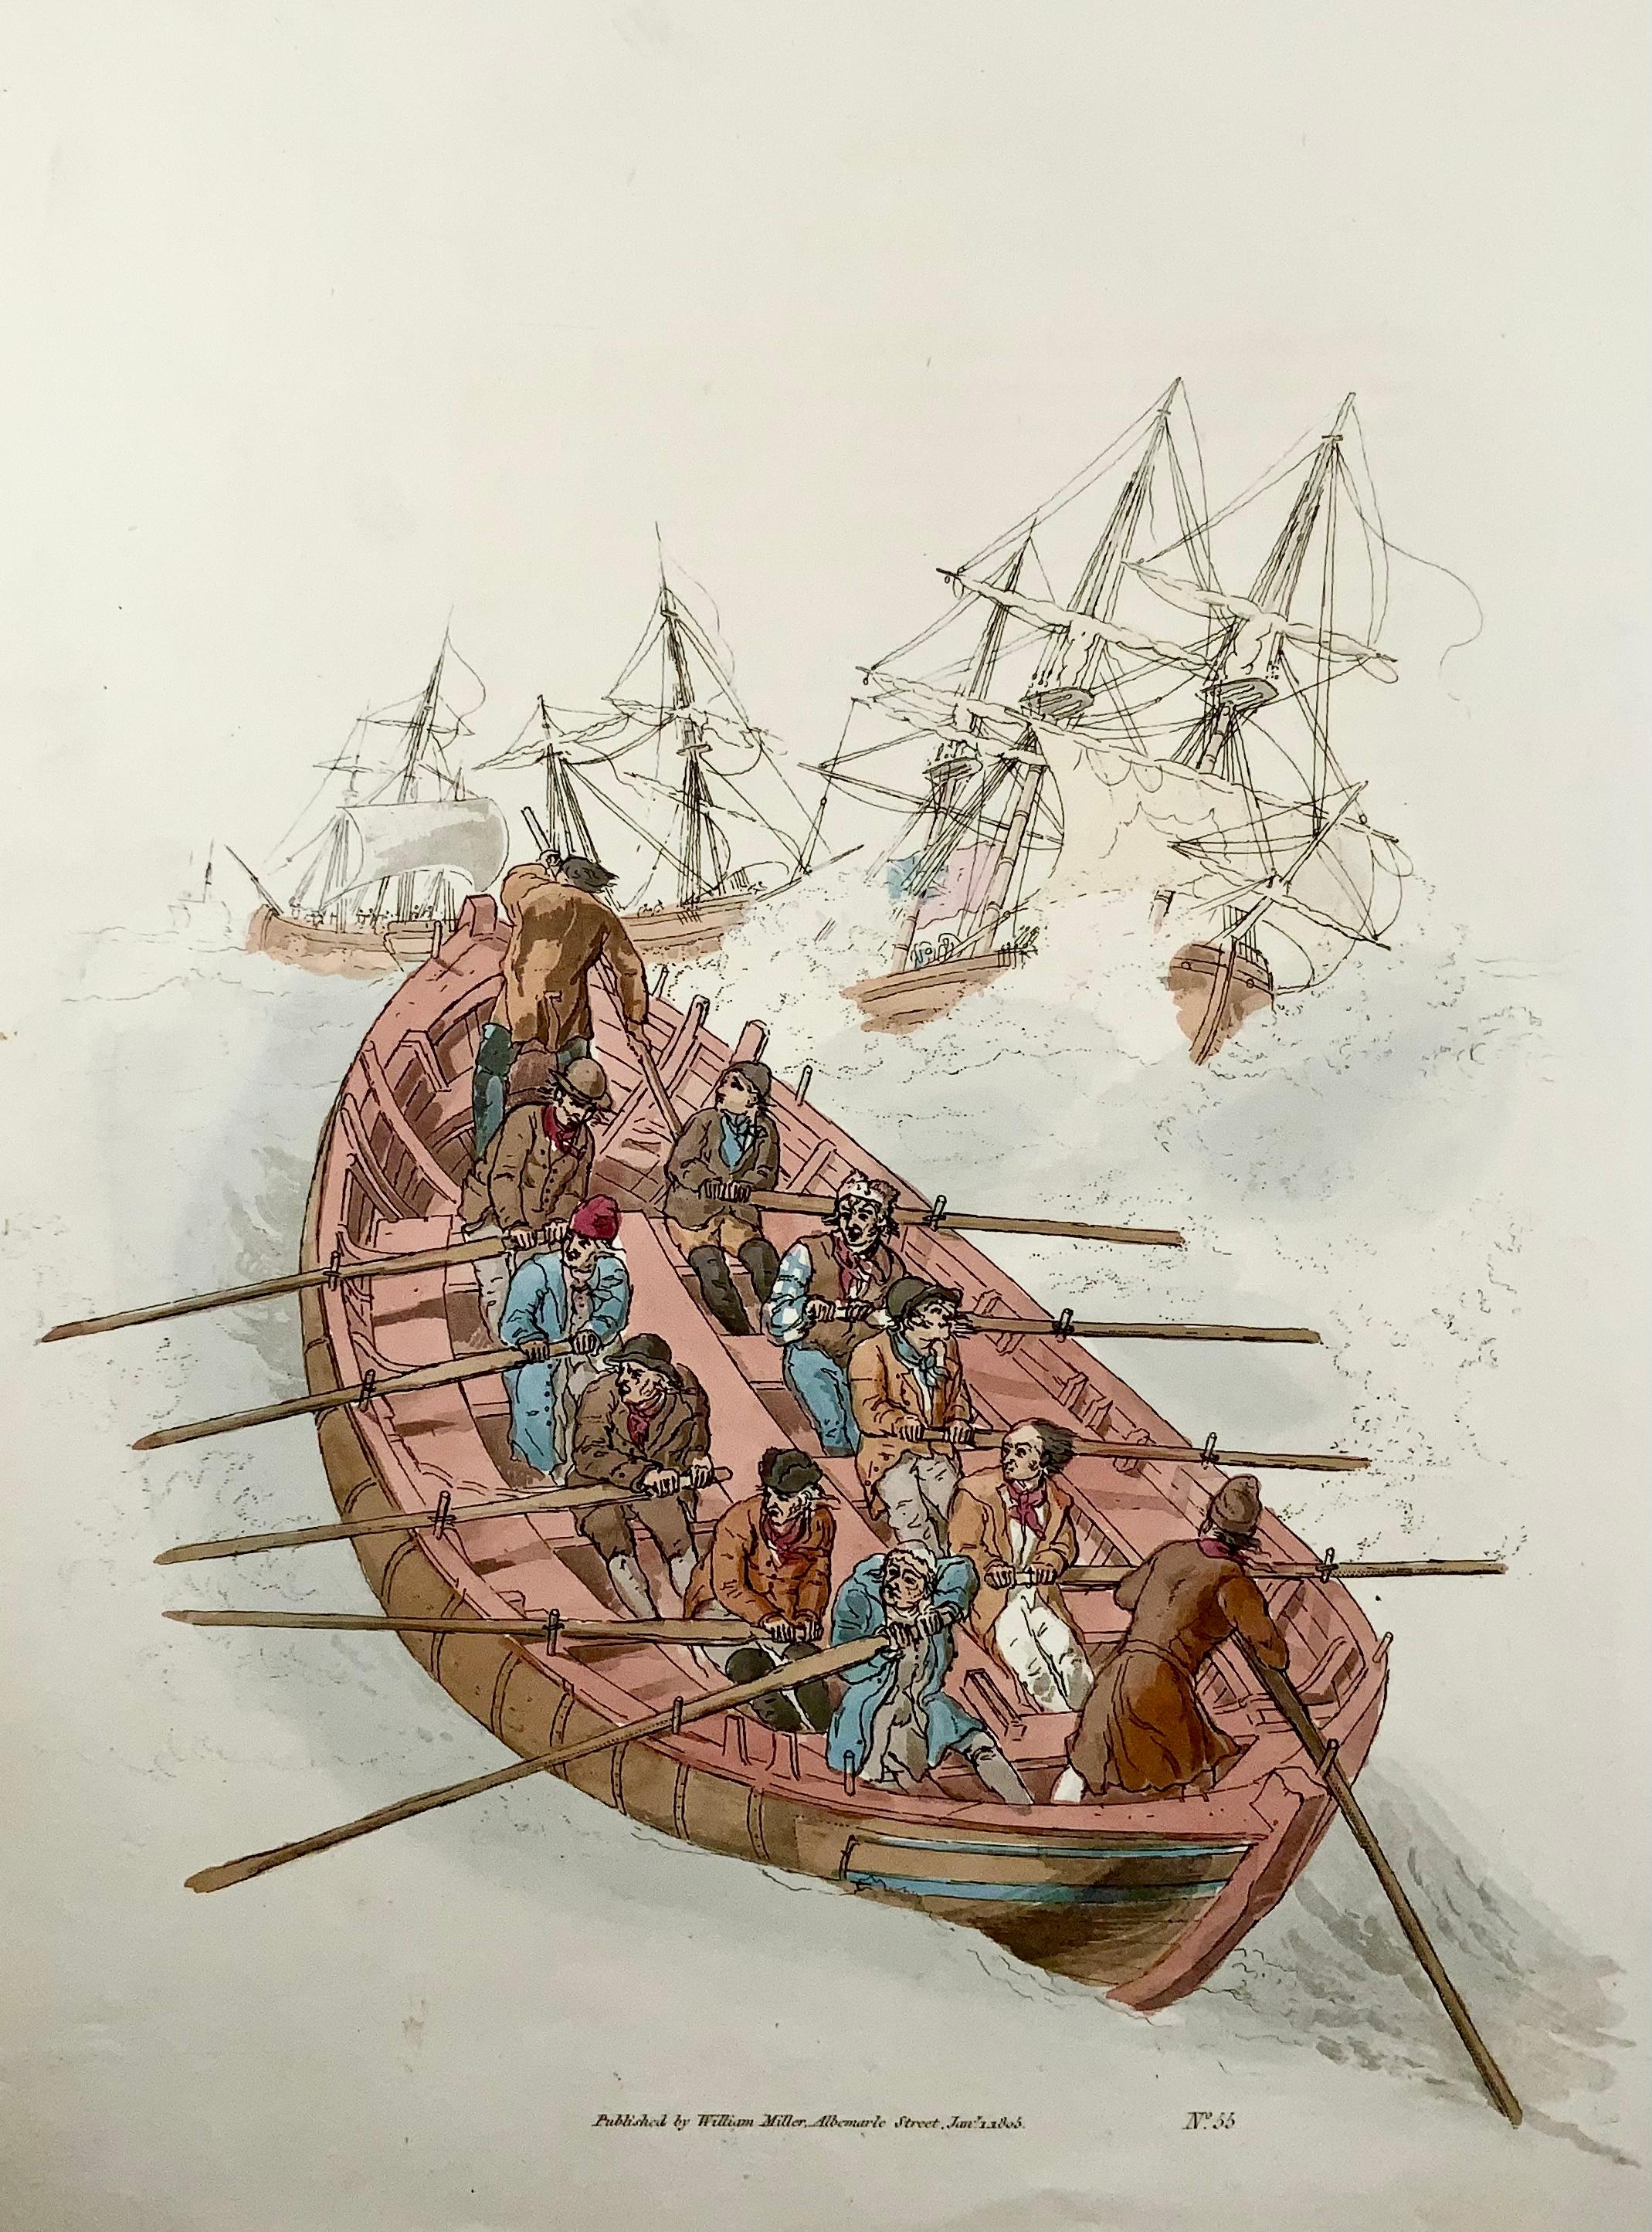 Seenotretter, die in einem Ruderboot unterwegs sind, um Seeleute von Schiffen in einem Sturm zu retten.

Handkolorierter Stich auf Papier von Matrosen in einem langen Boot, die gegen die hohe See zwischen dicht gerefften Linienschiffen